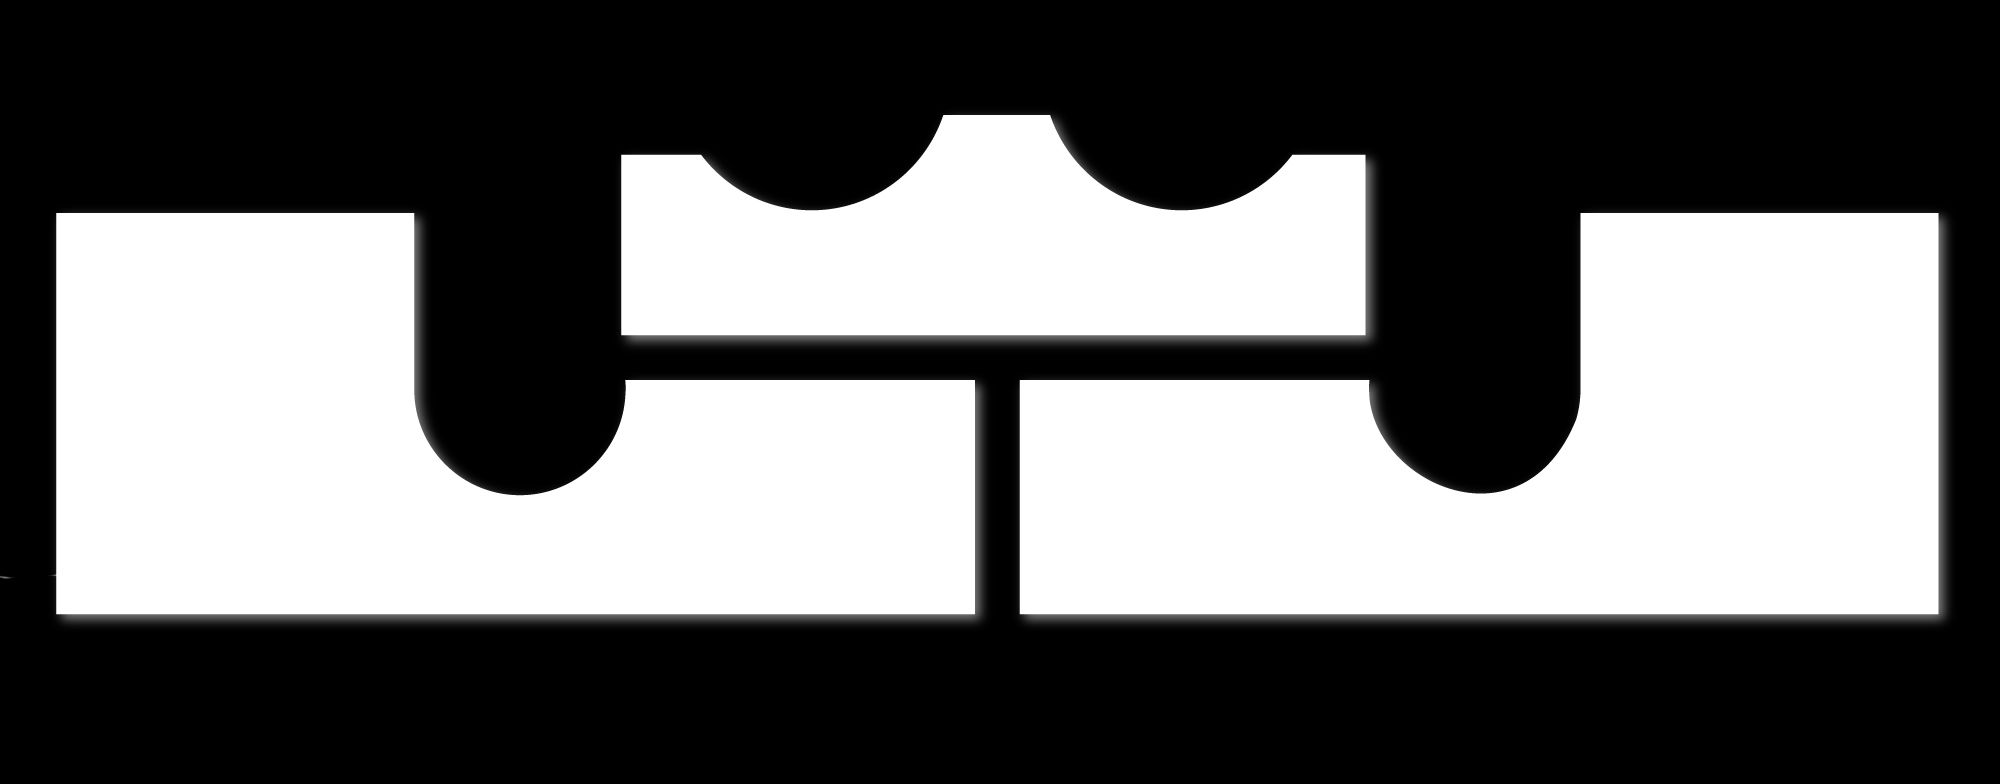 lebron logo crown